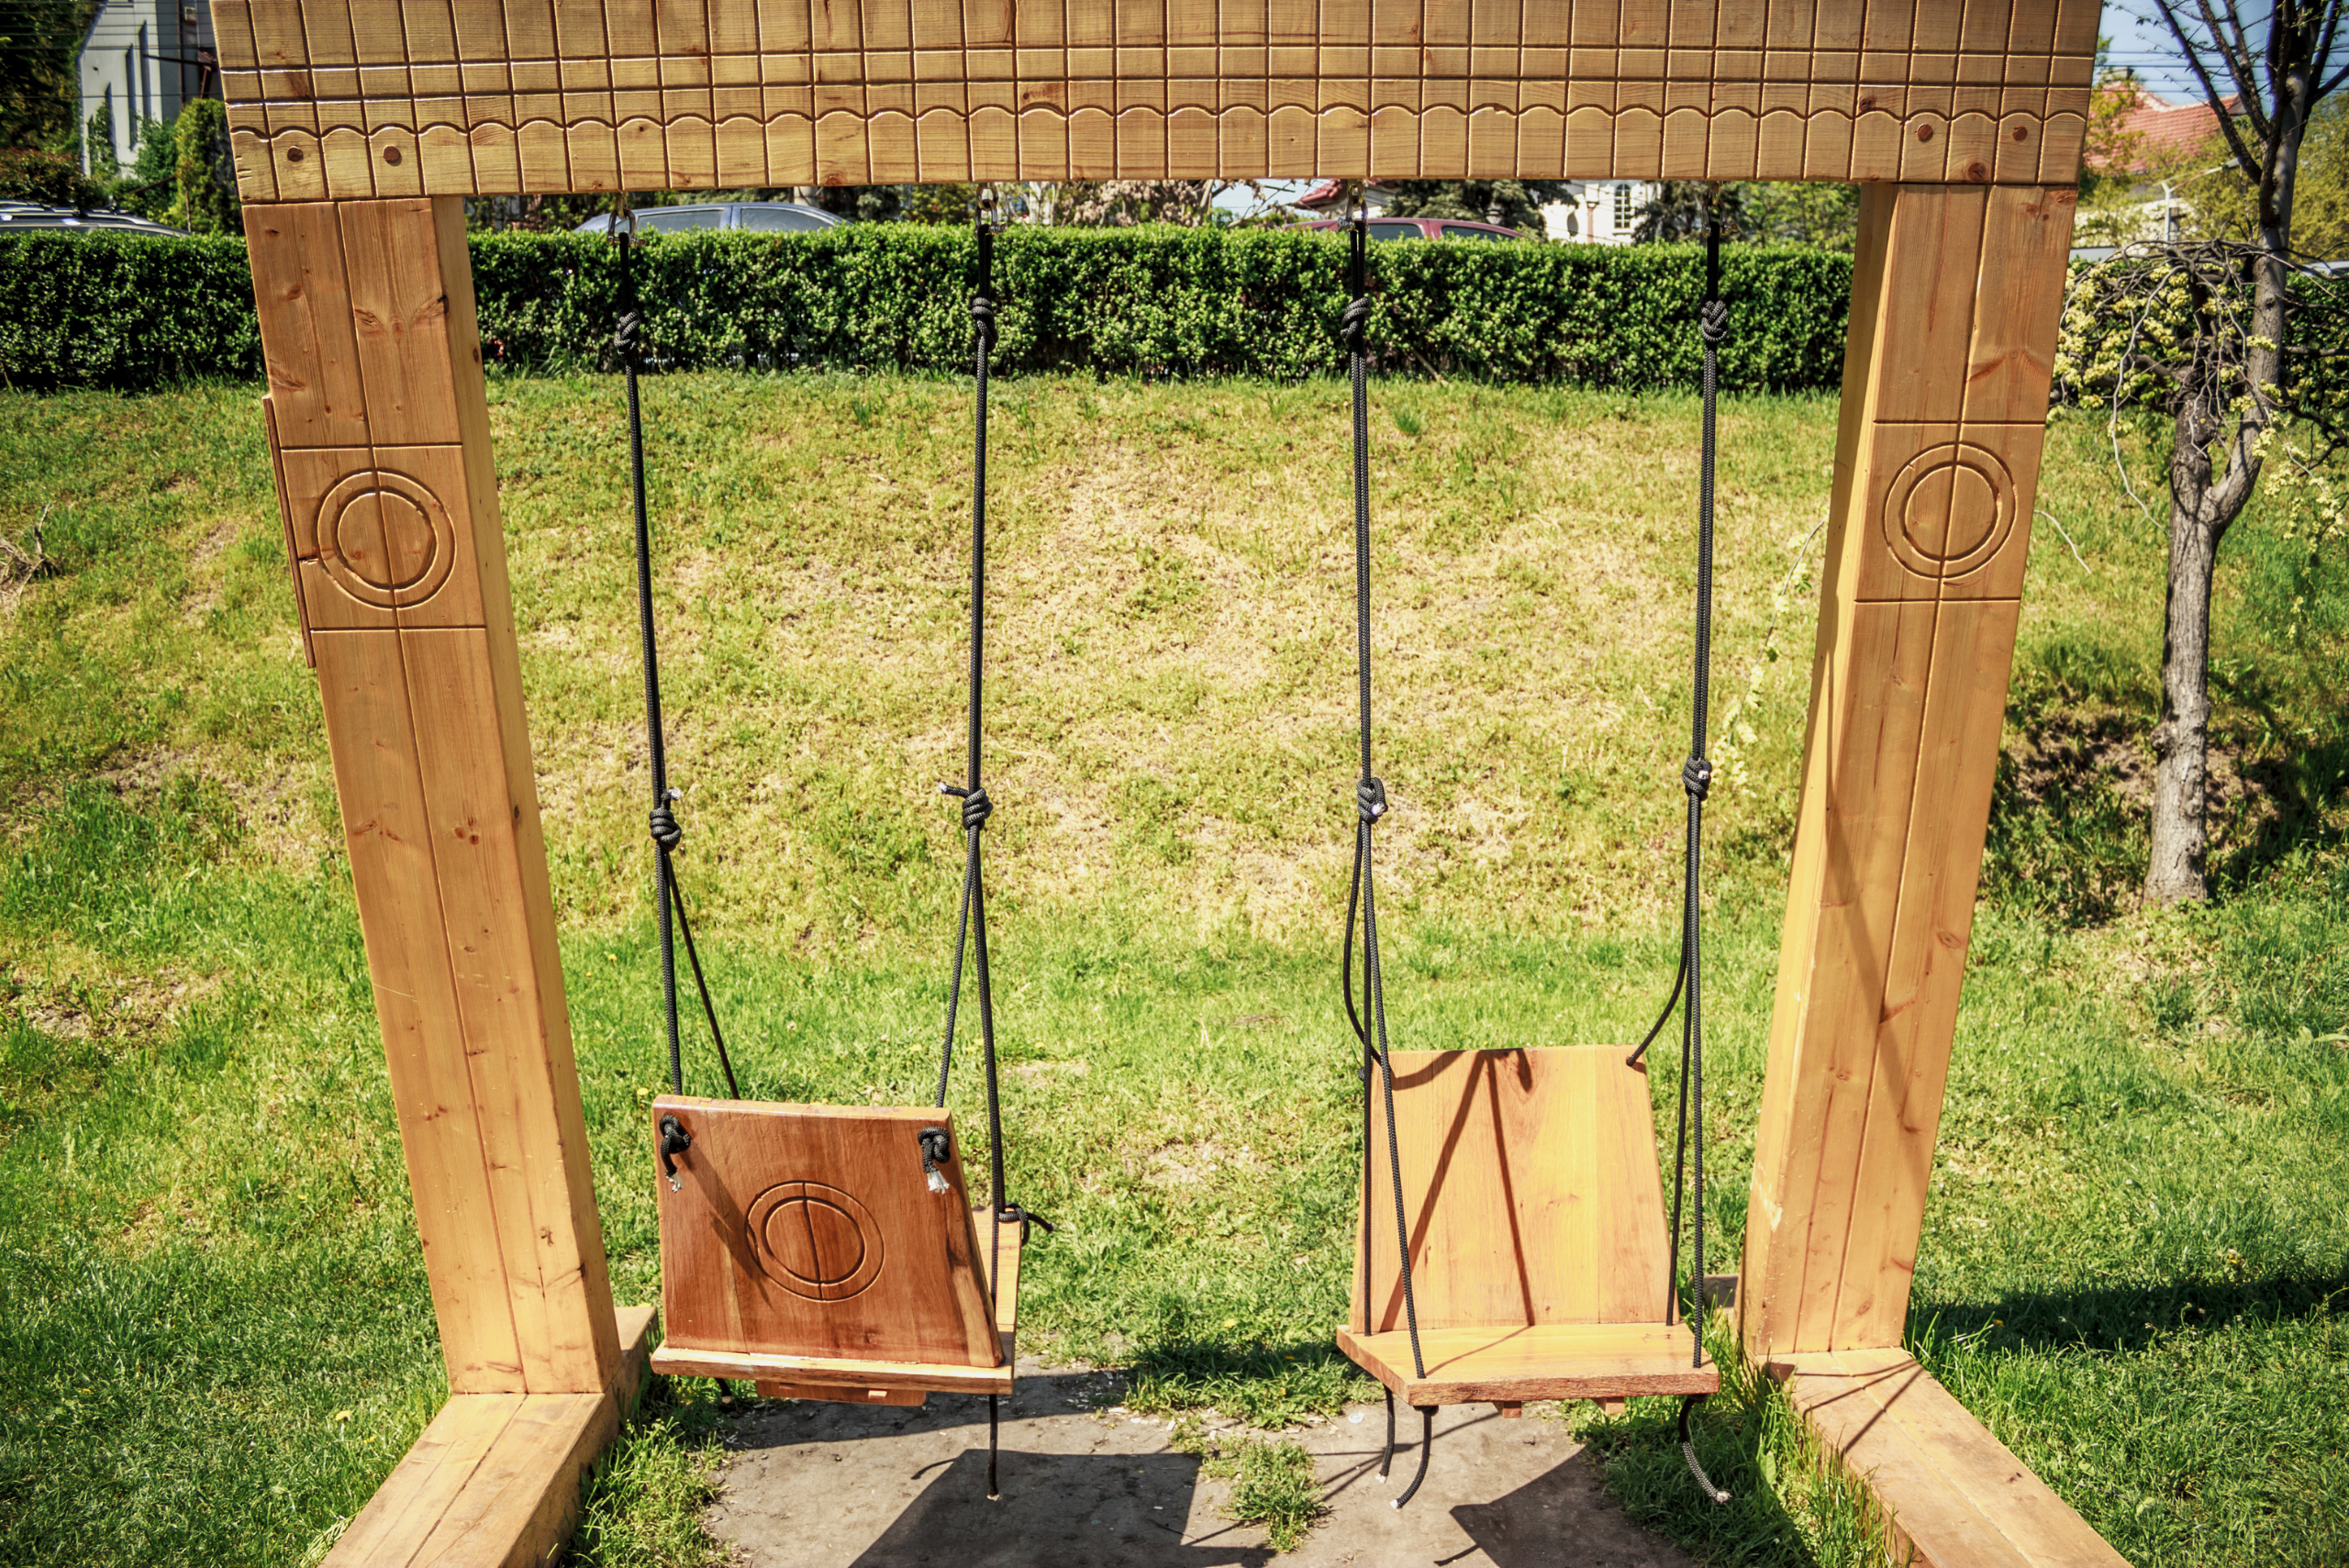 A wooden swing set.